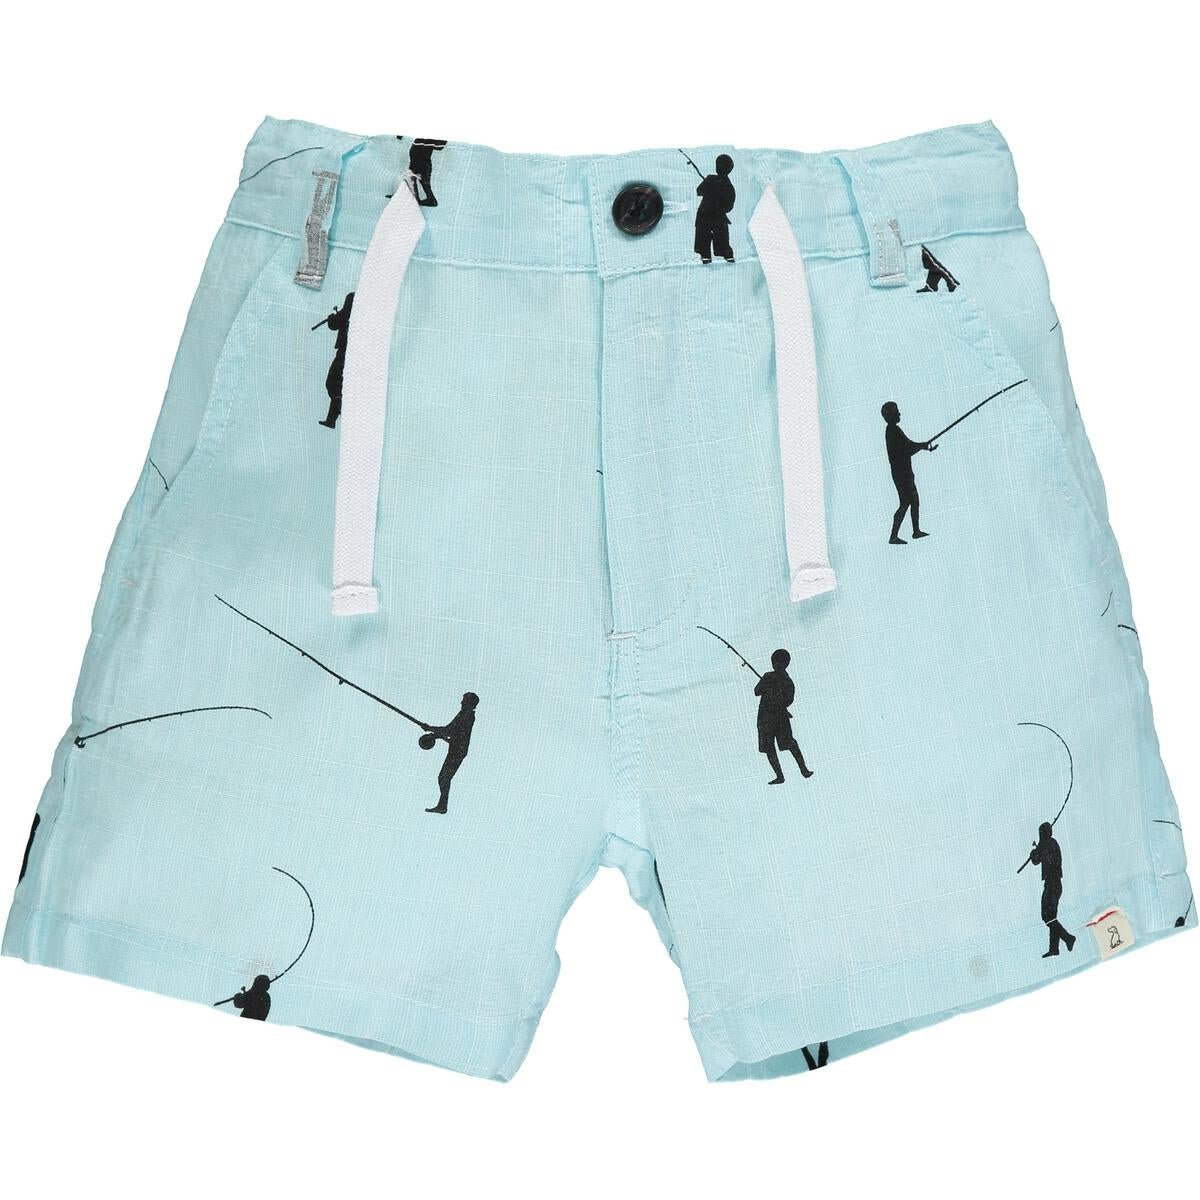 CREW fishing shorts - Nico